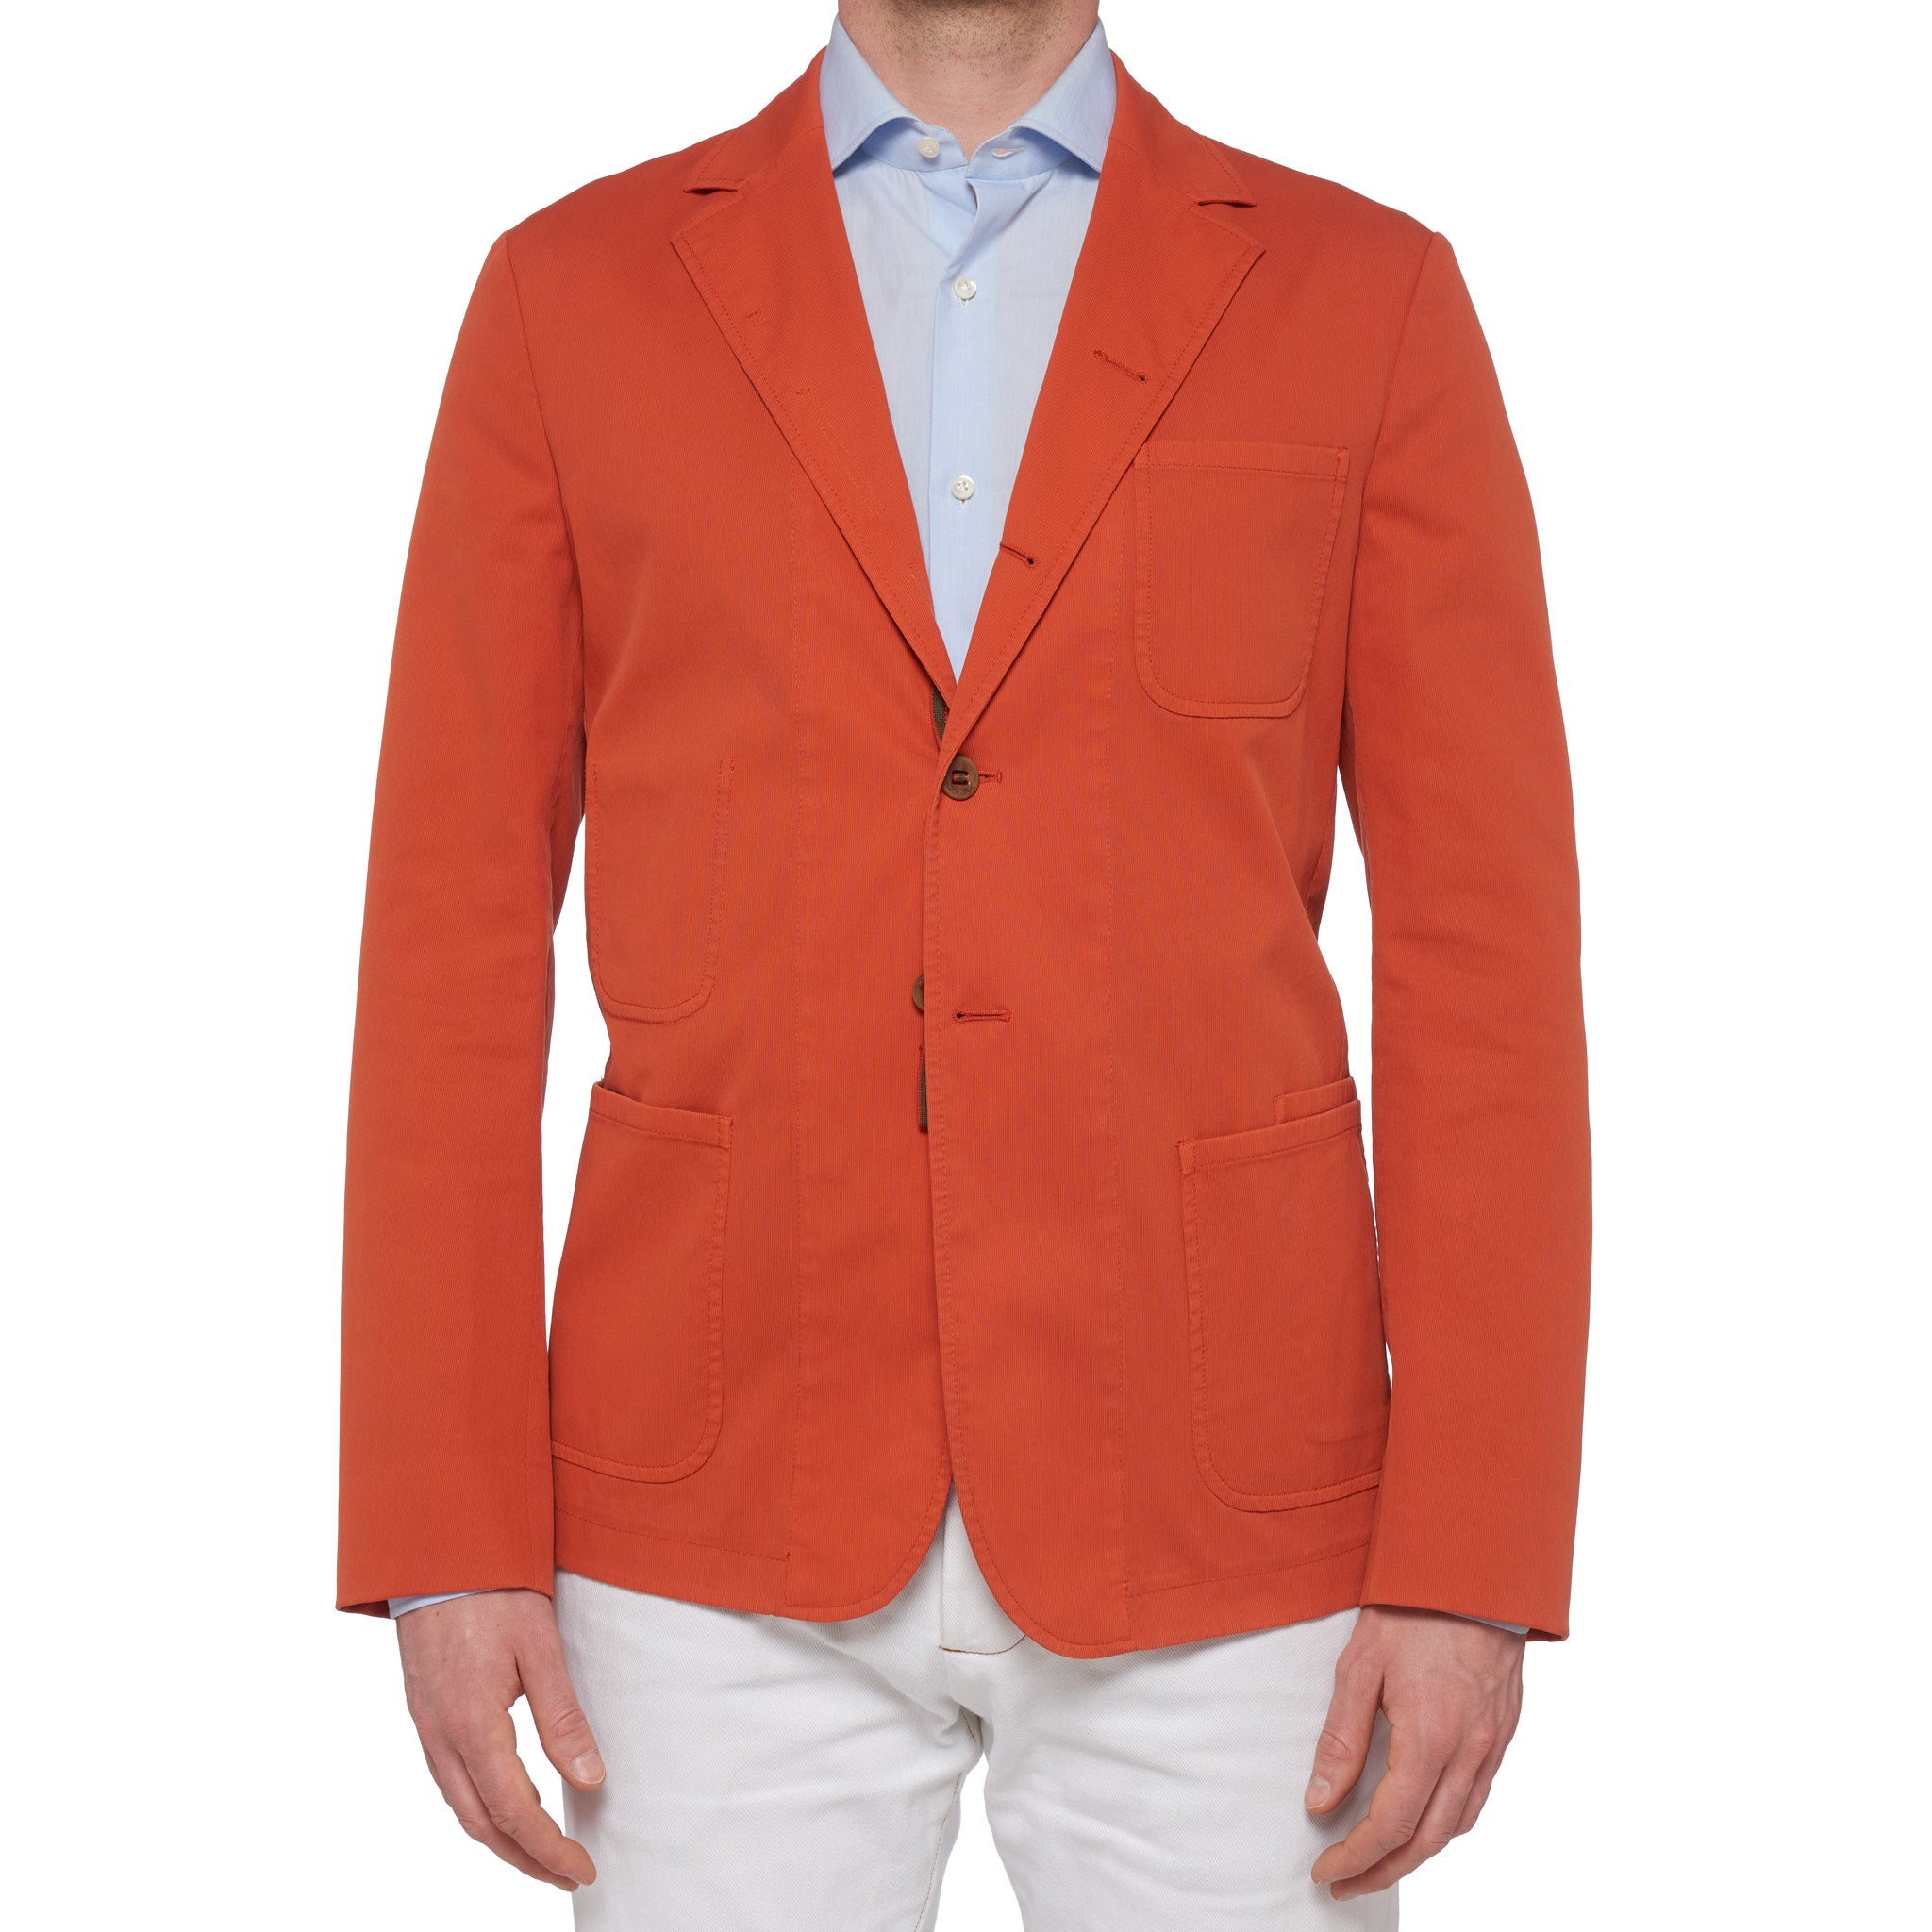 BOGLIOLI Galleria "74" Orange Cotton 4 Button Unlined Jersey Jacket 50 NEW US 40 BOGLIOLI